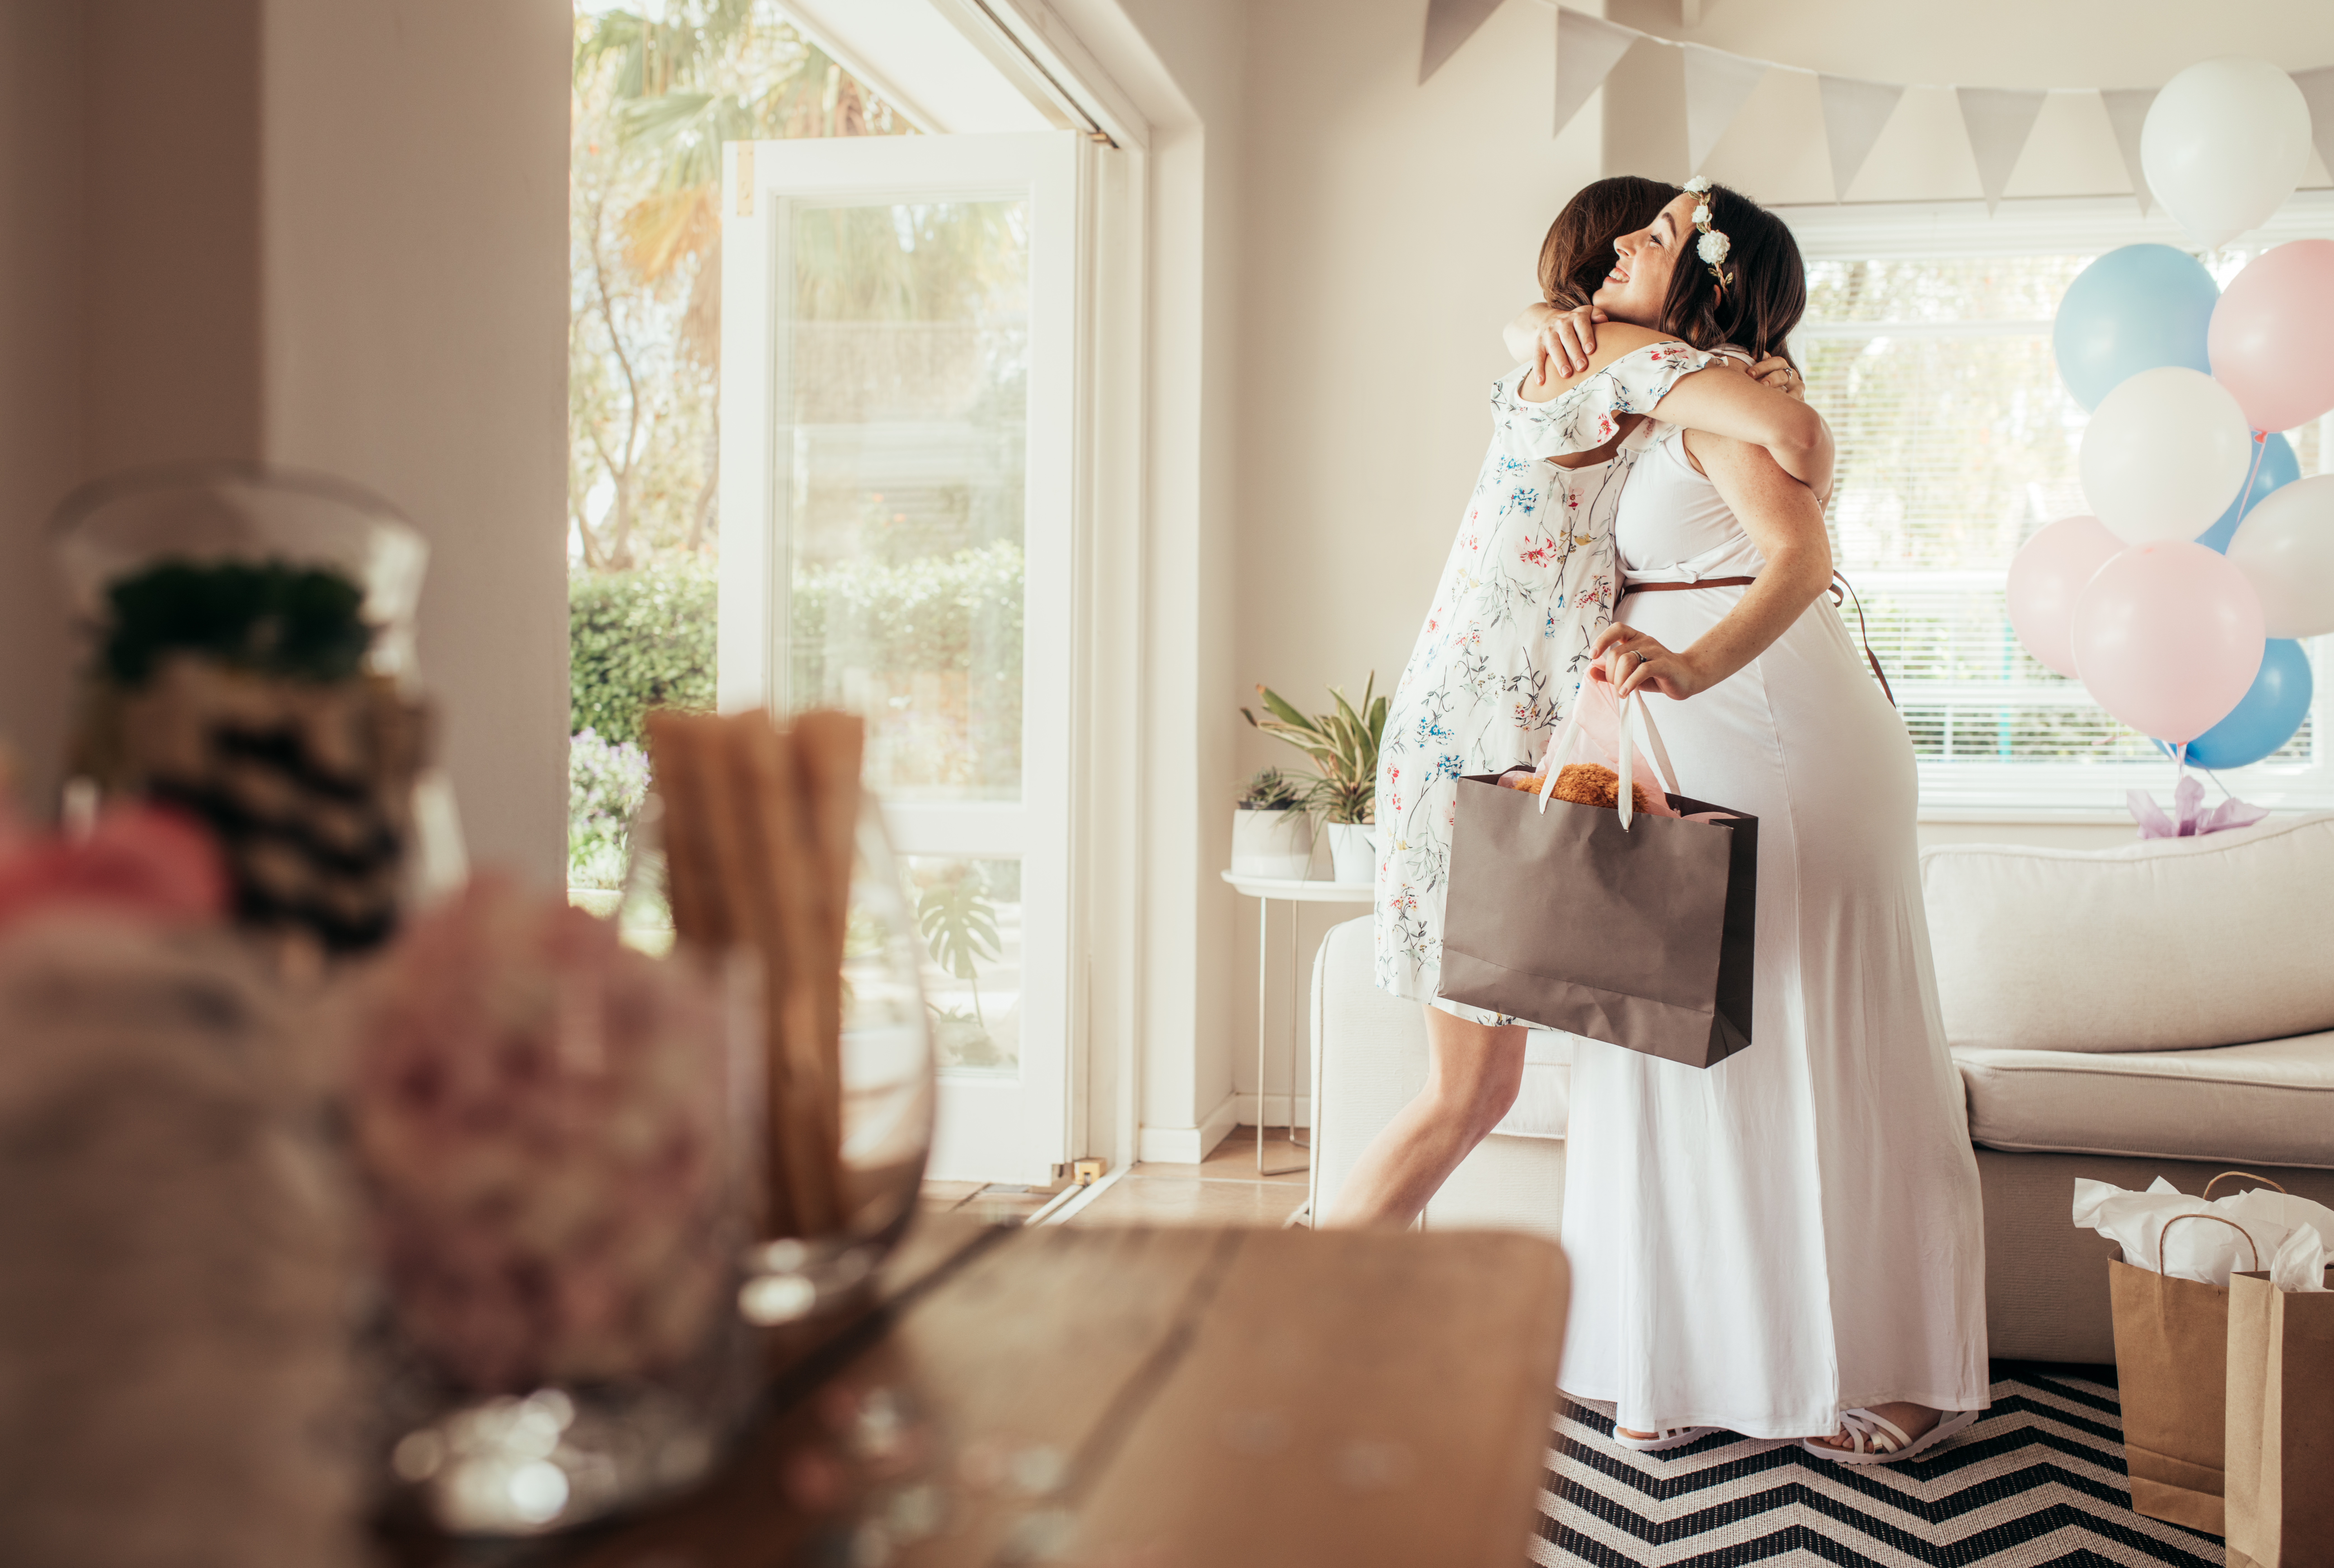 Jemand, der eine schwangere Frau bei einer Babyparty umarmt | Quelle: Shutterstock